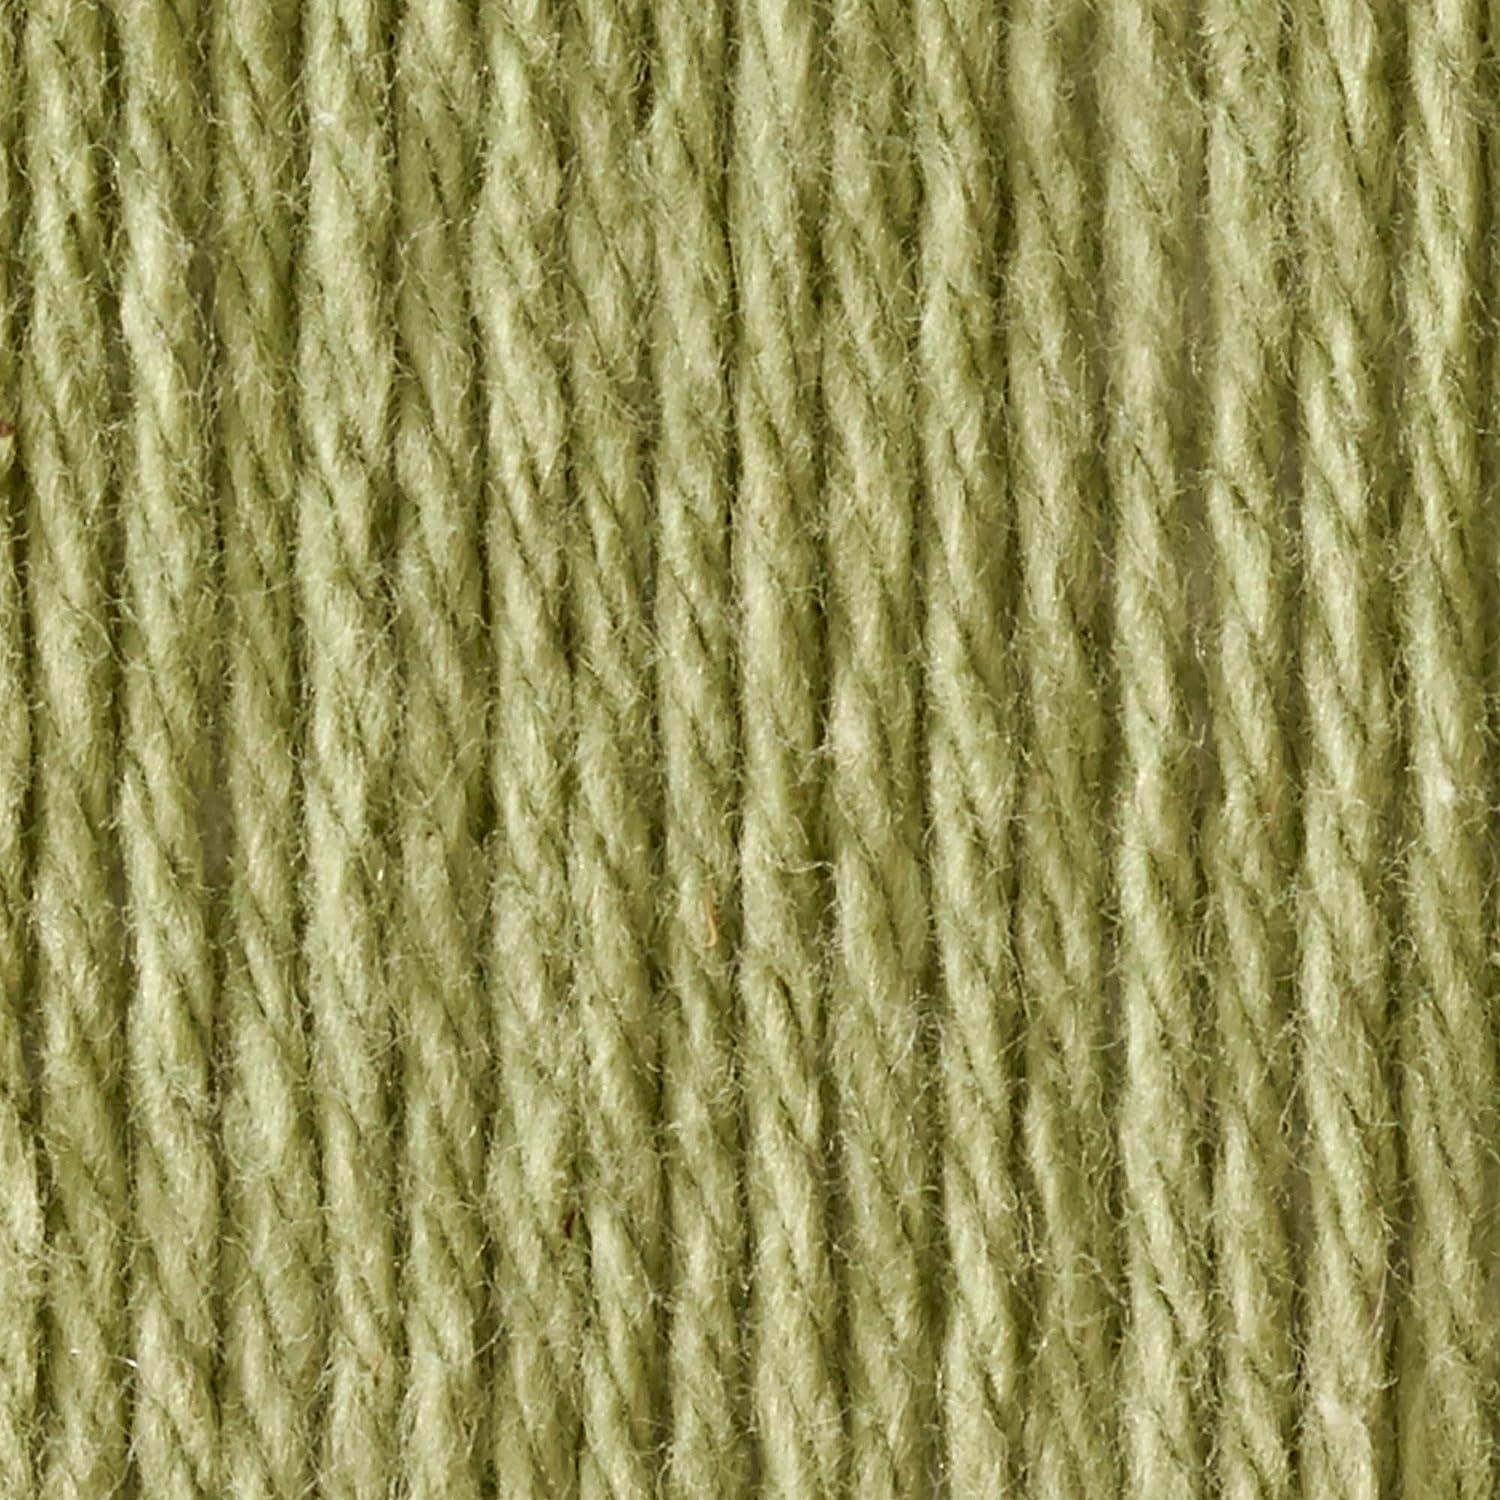 Lily Sugar 'N Cream The Original Solid Yarn 2.5oz Medium 4 Gauge 100%  Cotton - Sage Green - Machine Wash & Dry